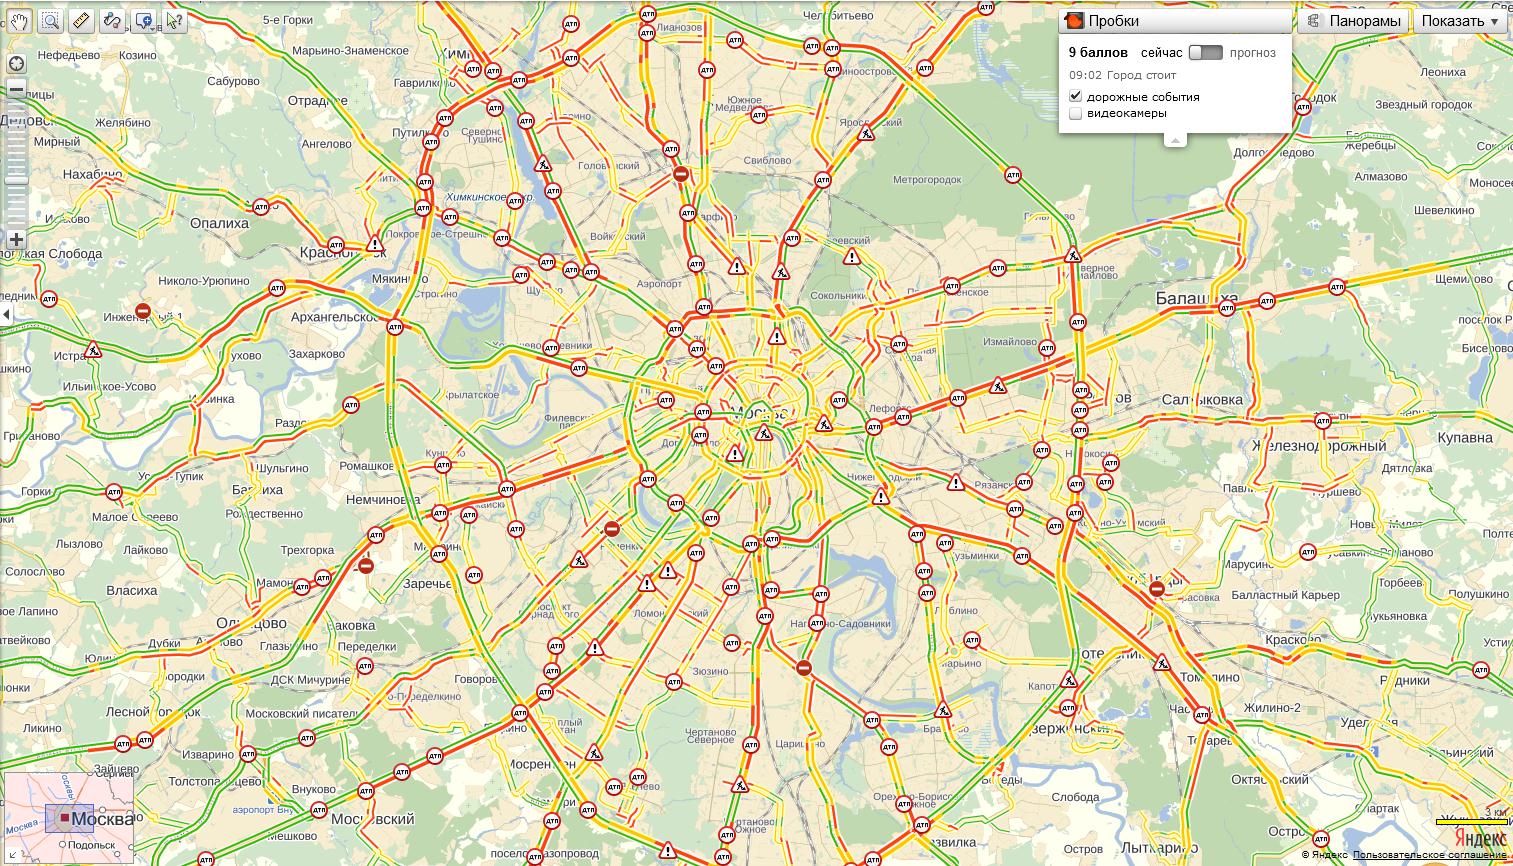 Показать на карте мкад. Карта Москвы с метро и улицами. МКАД на карте Москвы с метро. Многокилометровые пробки в Москве. Карта автодорог Москвы.